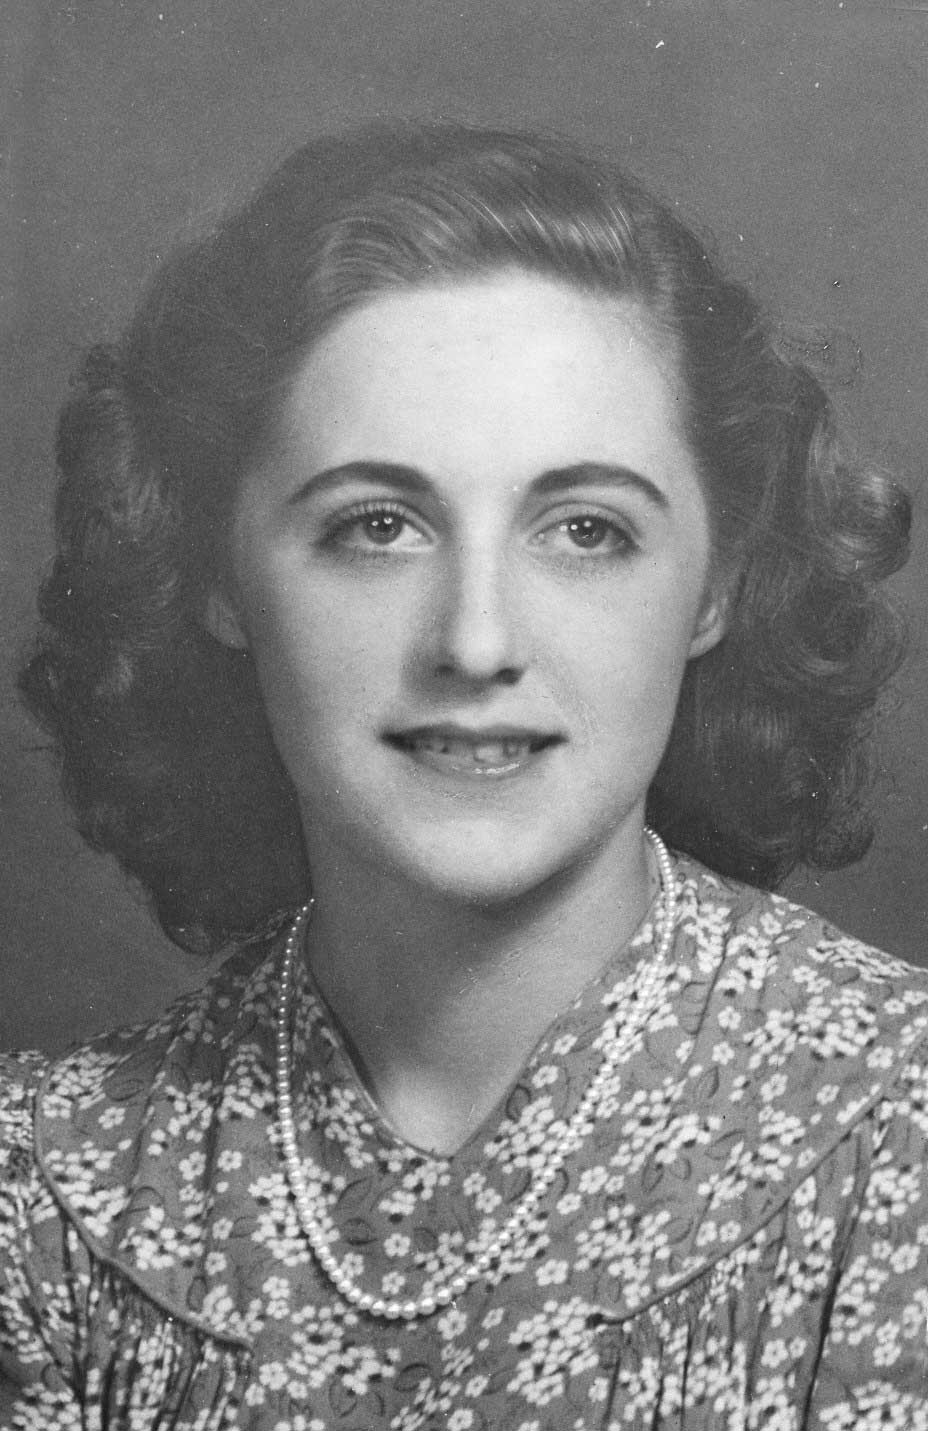 Pamela Dowley-Wise in 1942